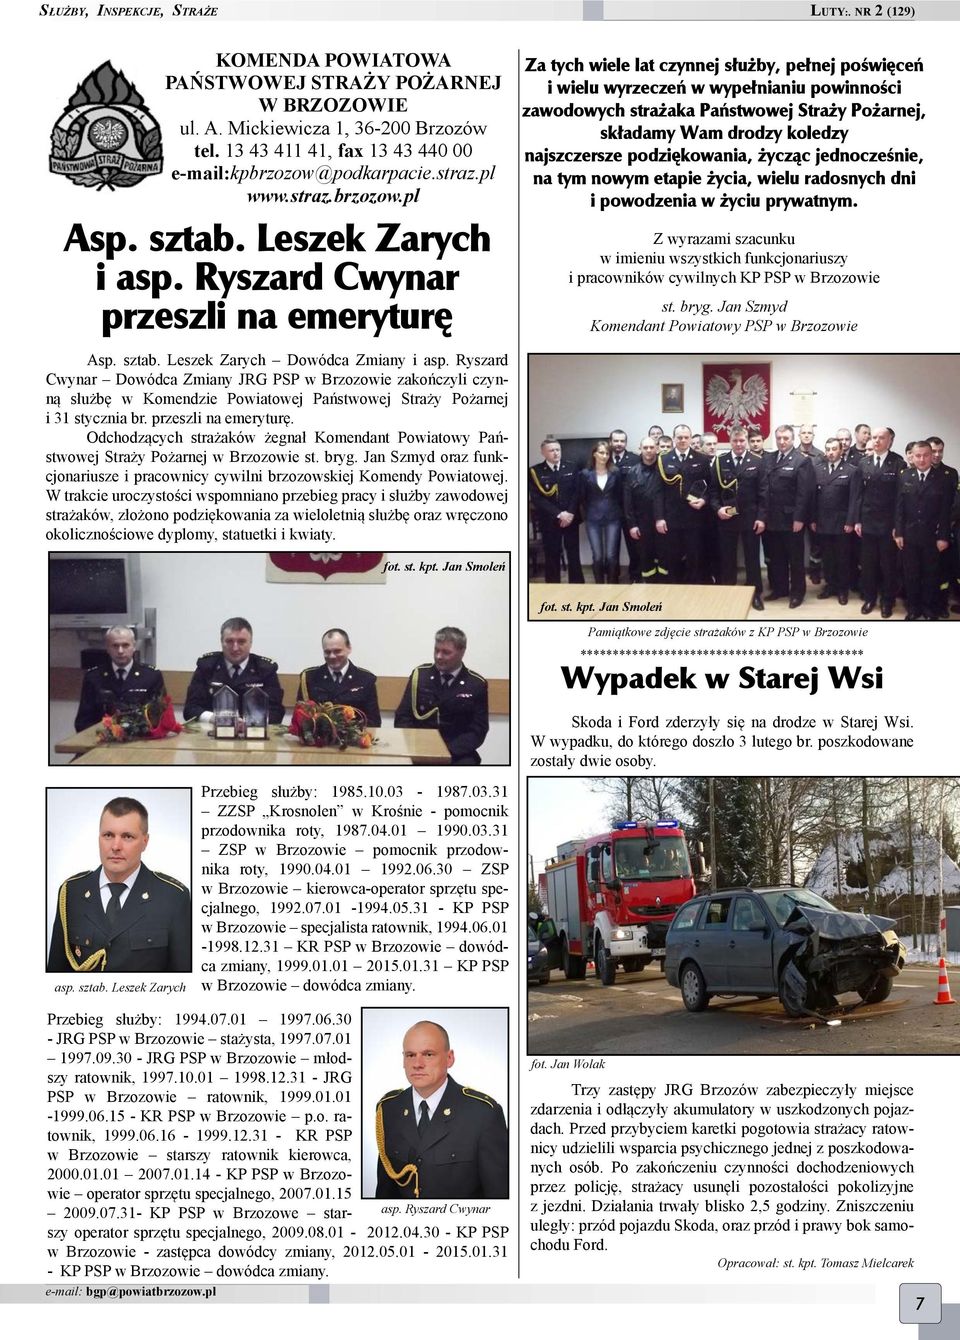 Ryszard Cwynar Dowódca Zmiany JRG PSP w Brzozowie zakończyli czynną służbę w Komendzie Powiatowej Państwowej Straży Pożarnej i 31 stycznia br. przeszli na emeryturę.